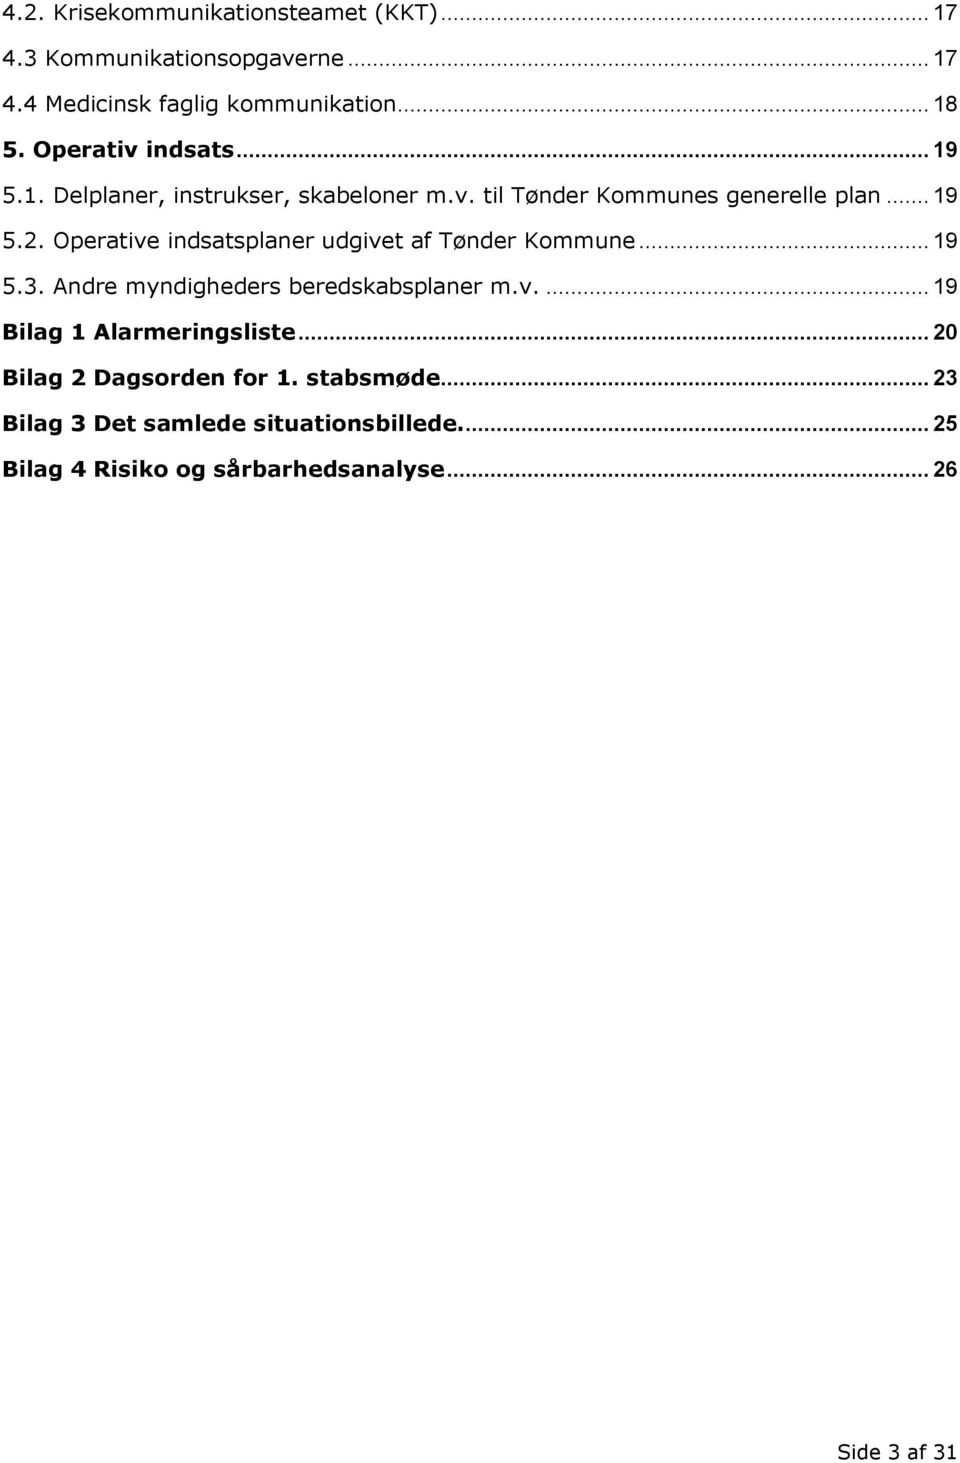 Operative indsatsplaner udgivet af Tønder Kommune... 19 5.3. Andre myndigheders beredskabsplaner m.v.... 19 Bilag 1 Alarmeringsliste.